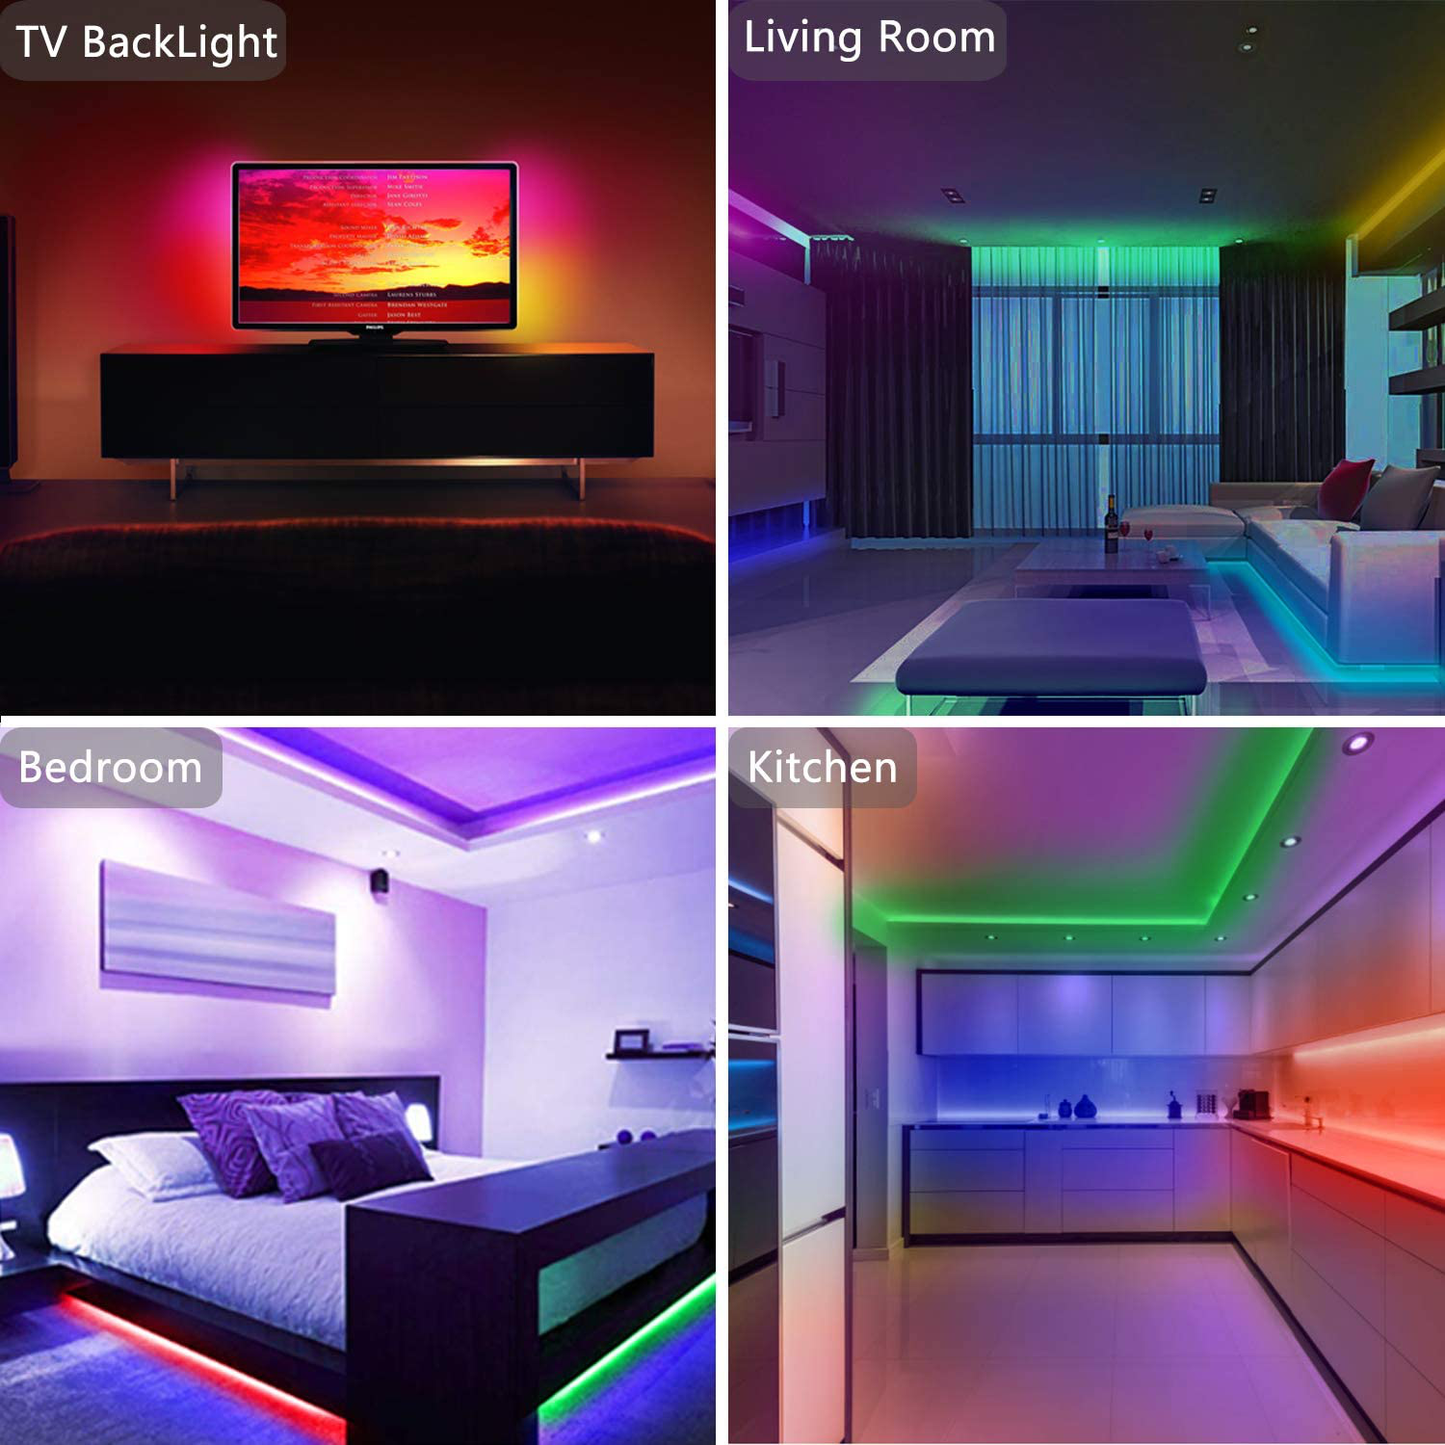 50ft Led Strip Lights, Keepsmile 5050 RGB Color Changing Led Light Strips, Led Lights for Bedroom, Kitchen, Home Decoration